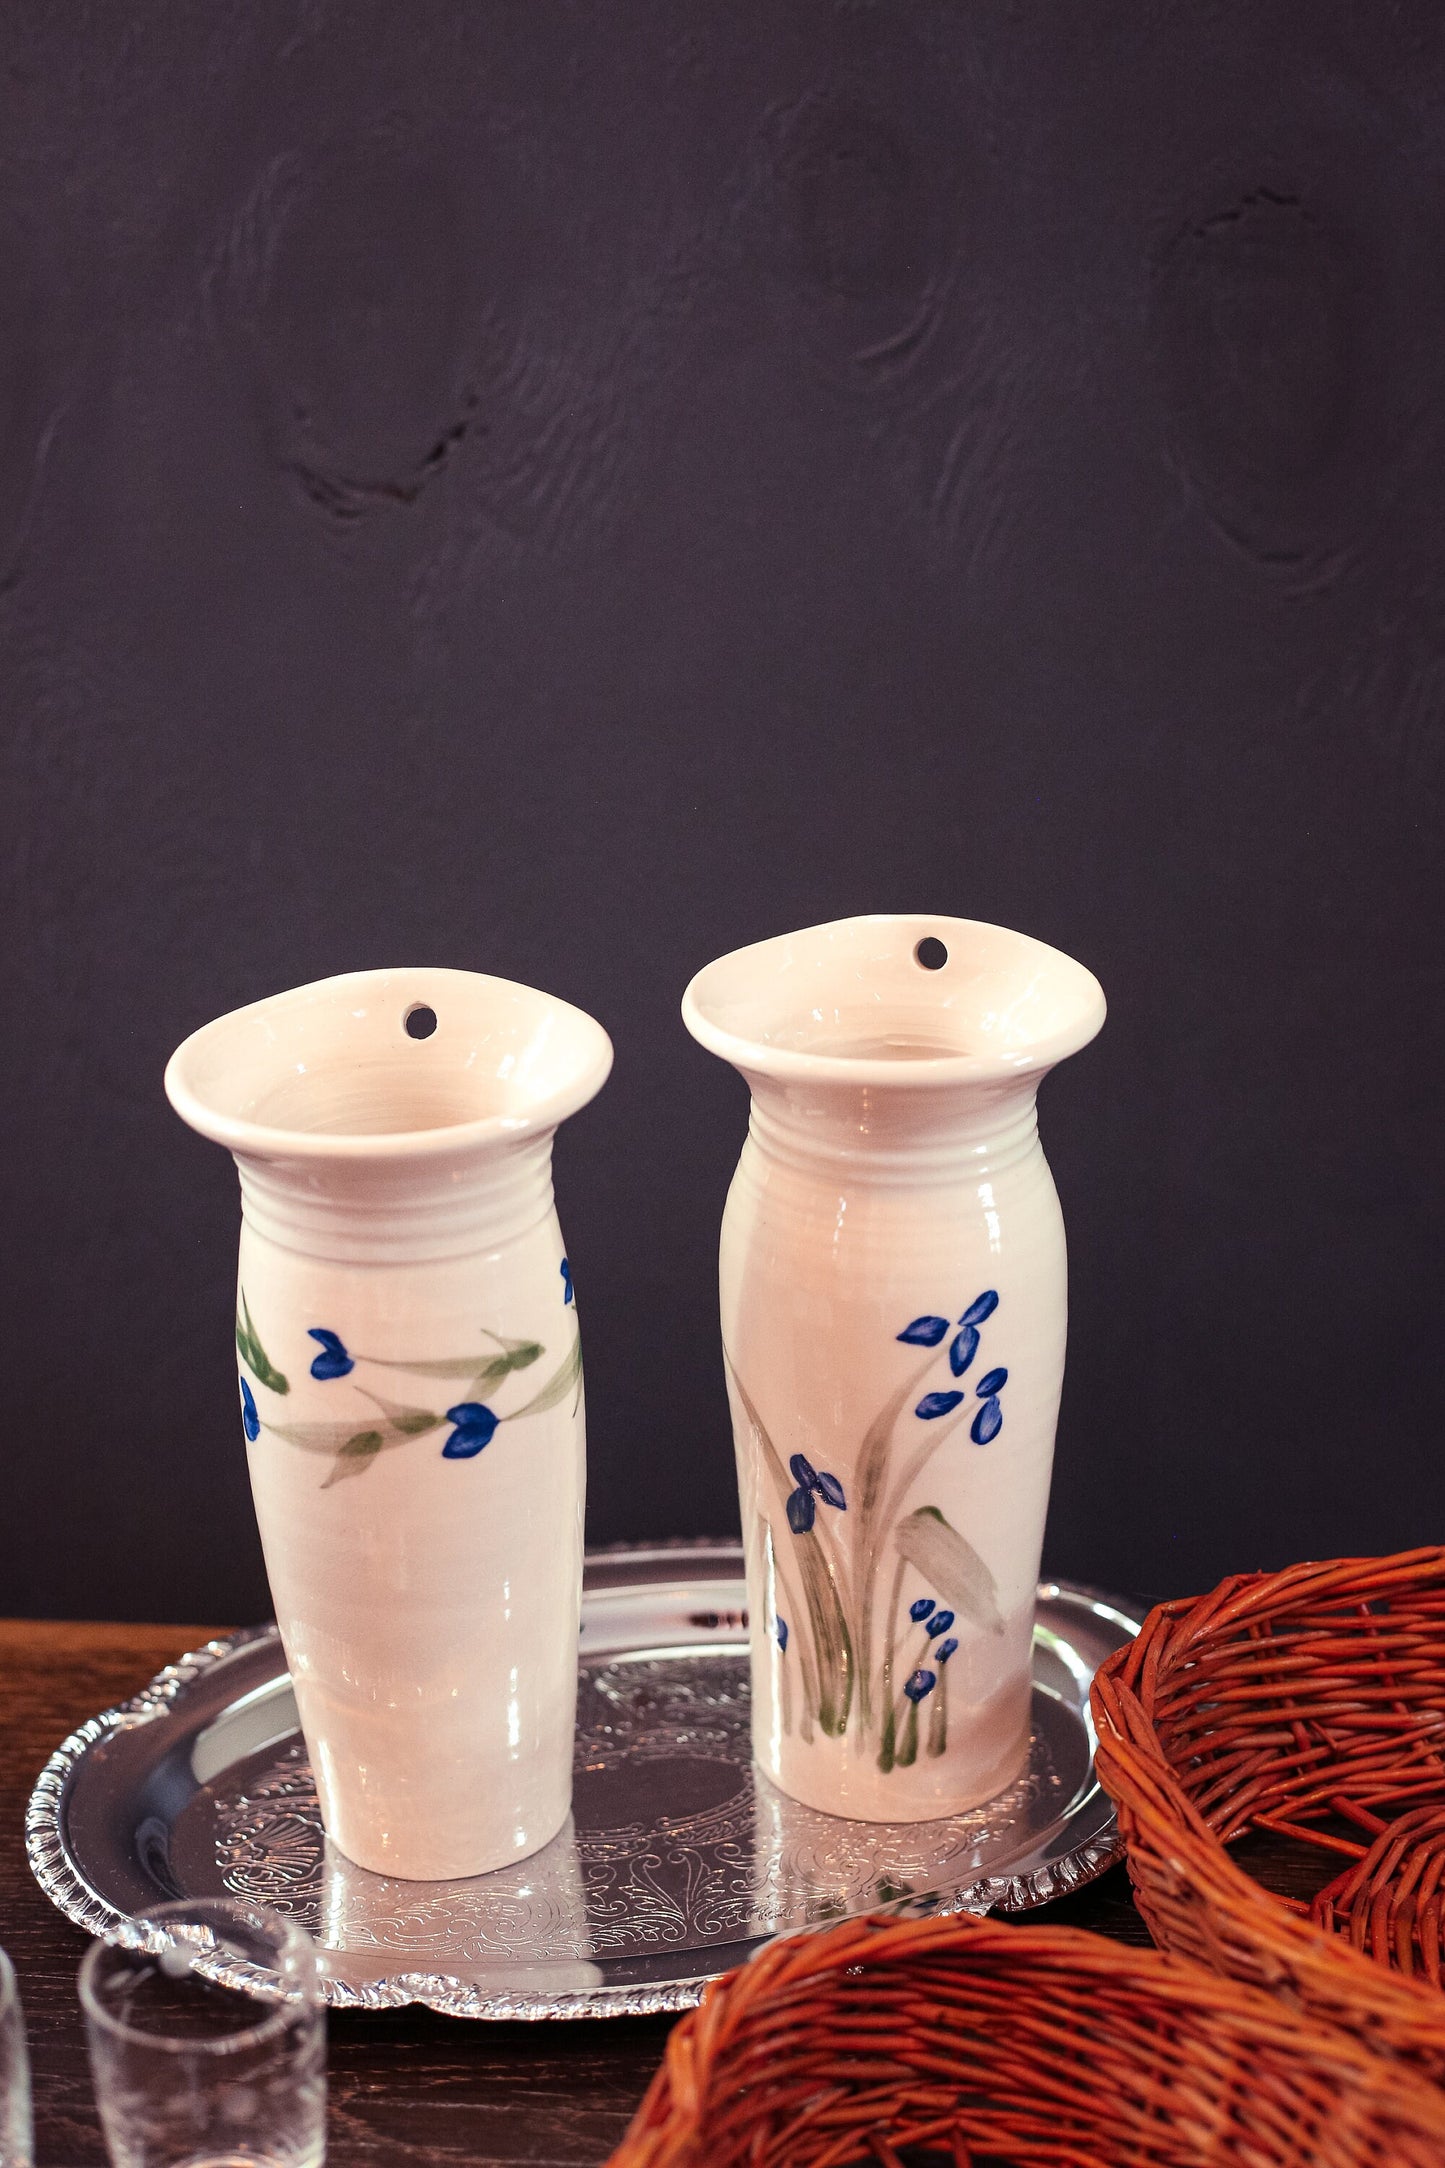 Pair of Hanging Vases with Handpainted Flowers - Vintage Studio Ceramic Wall Vases